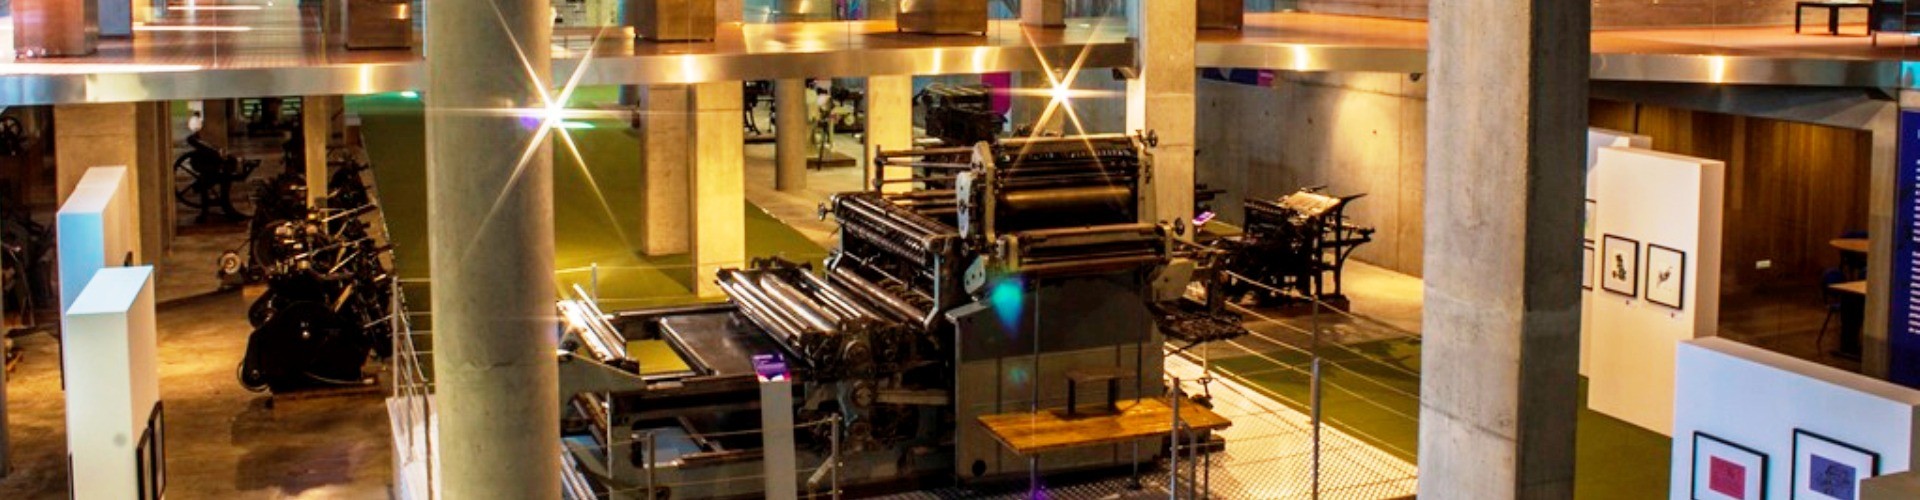 Museu da Imprensa da Madeira Press Museum